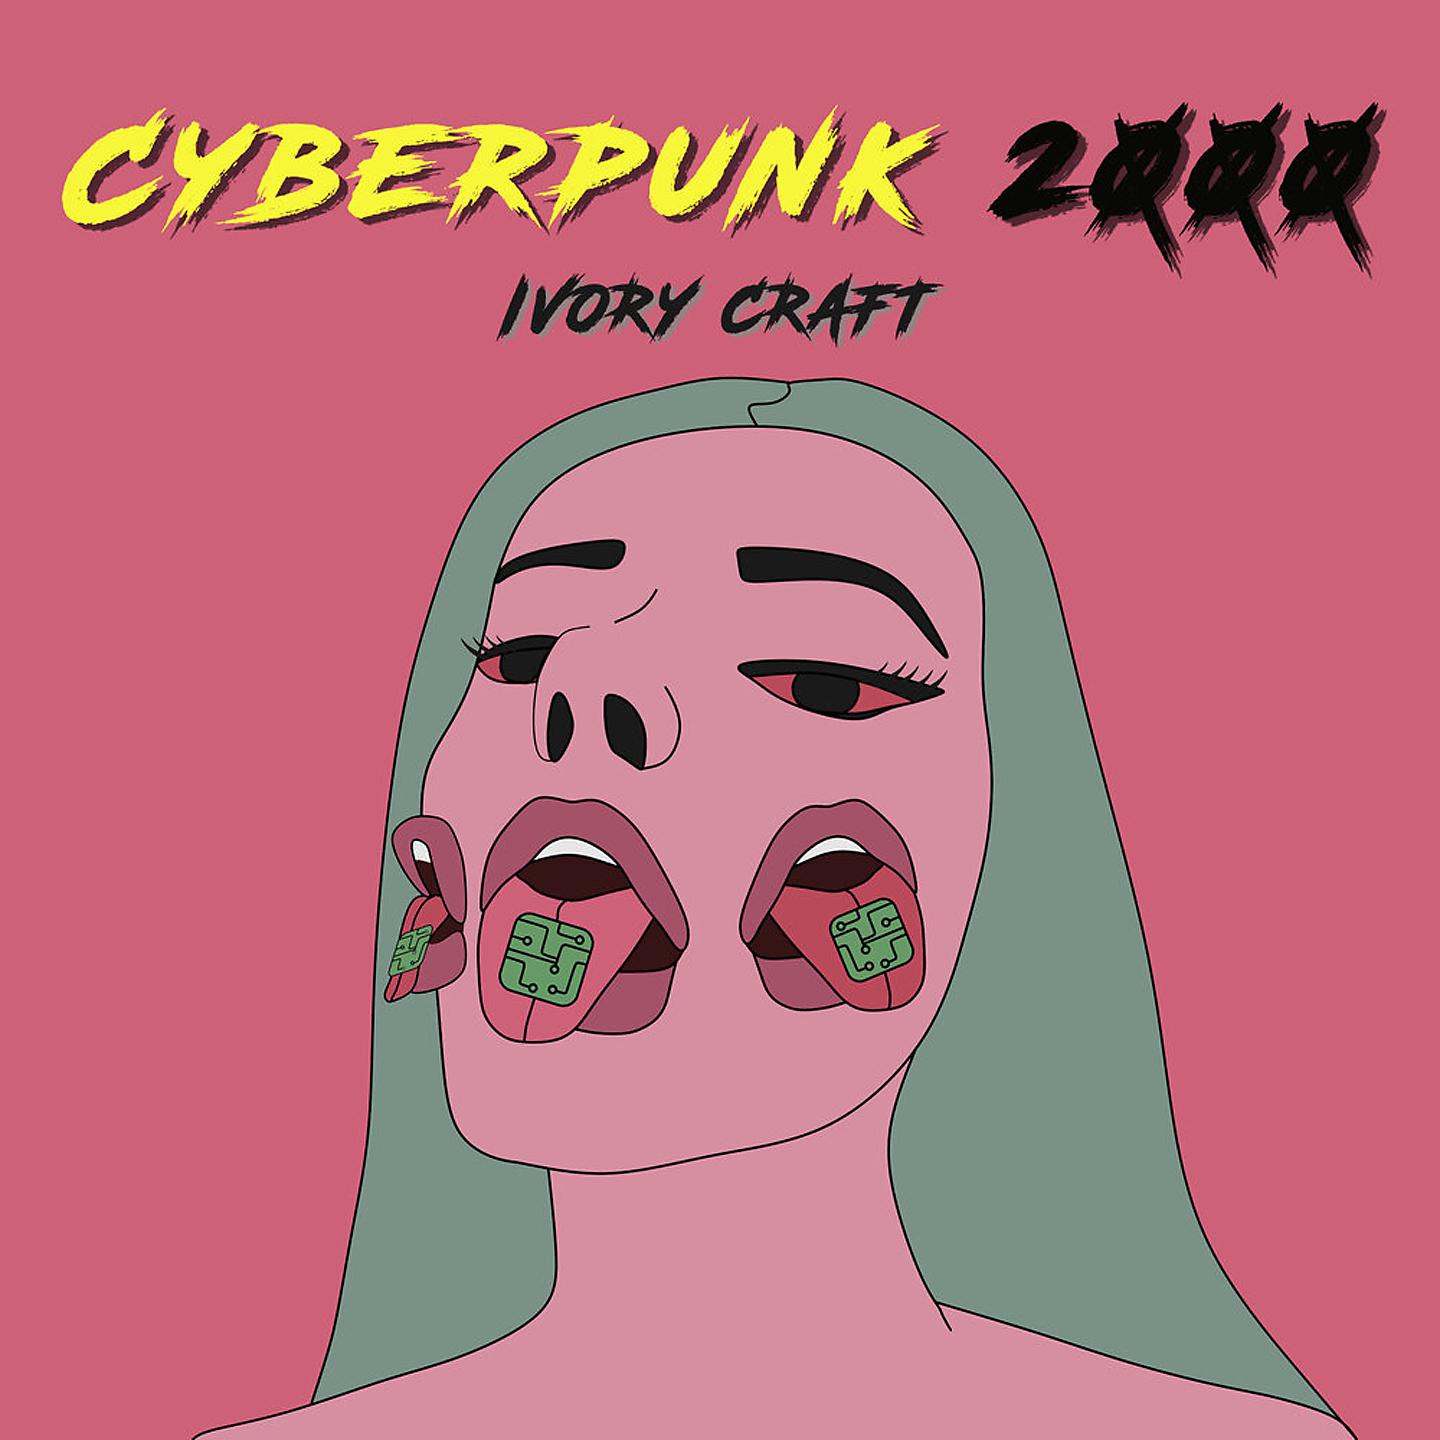 Ivory craft cyberpunk 2000 текст